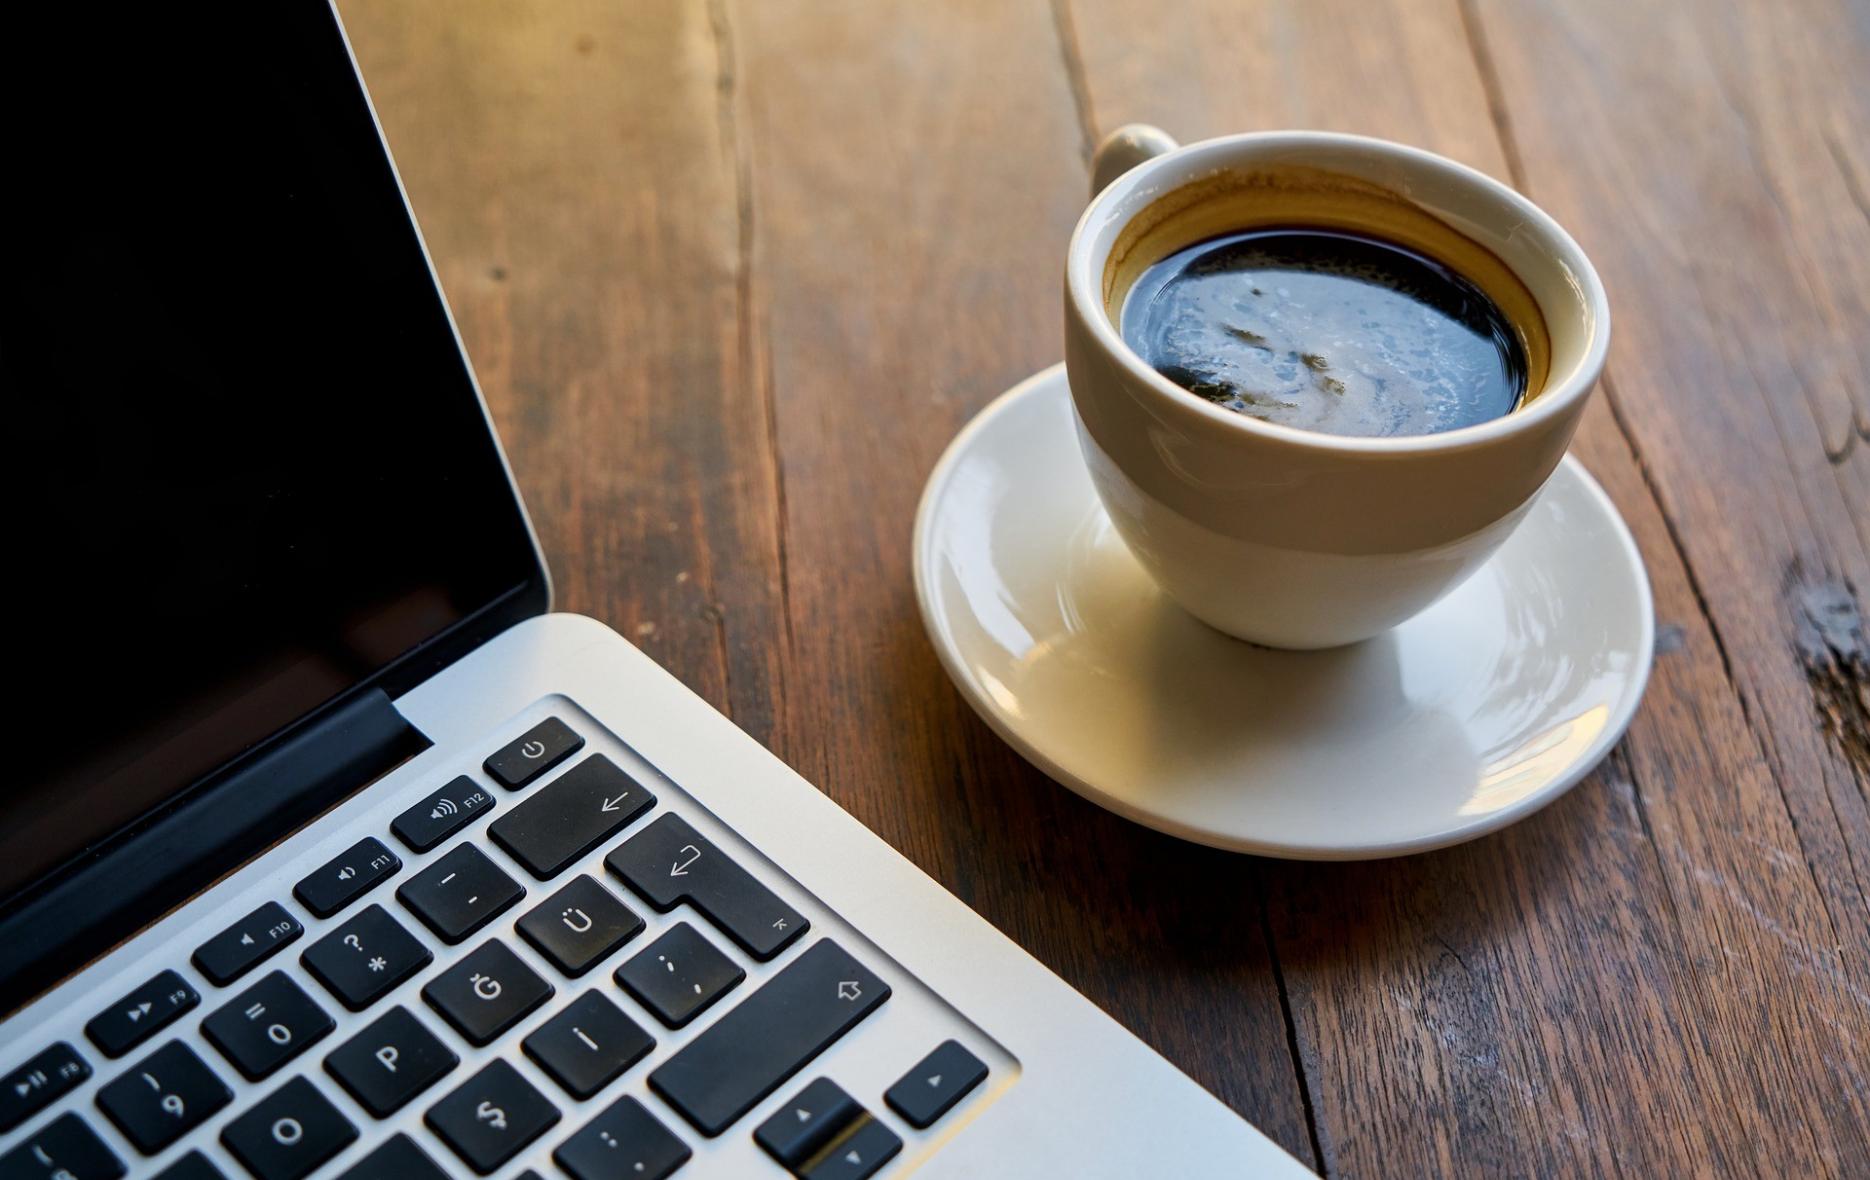 美国西北大学最新研究证实每天适量饮用咖啡能有效将感染新冠肺炎的风险降低10%